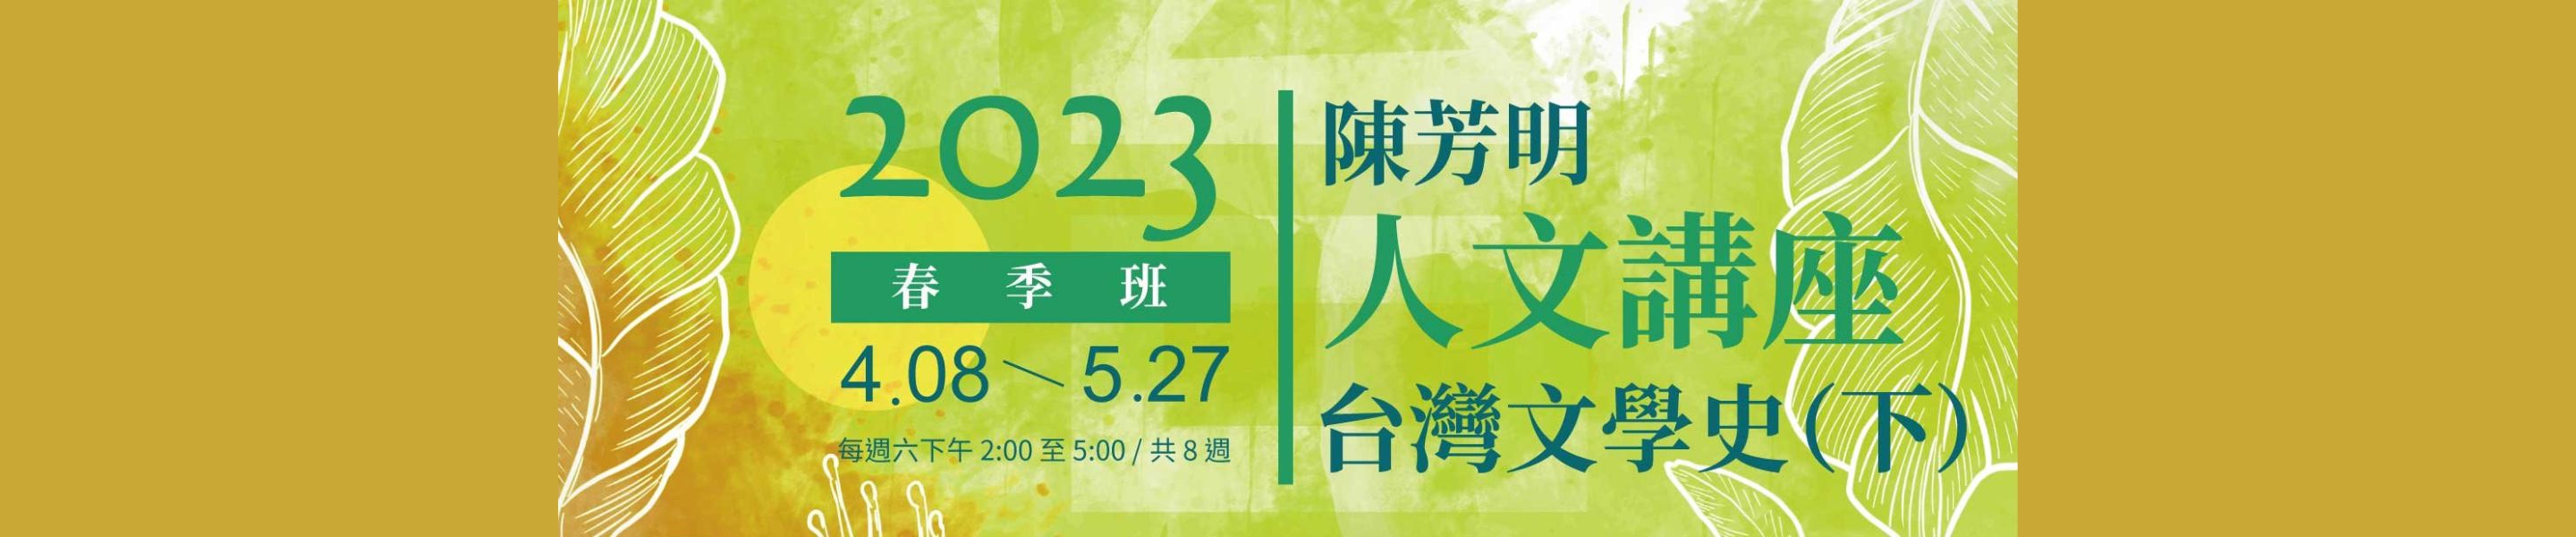 陳芳明人文講座「台灣文學史（下）」推廣課程